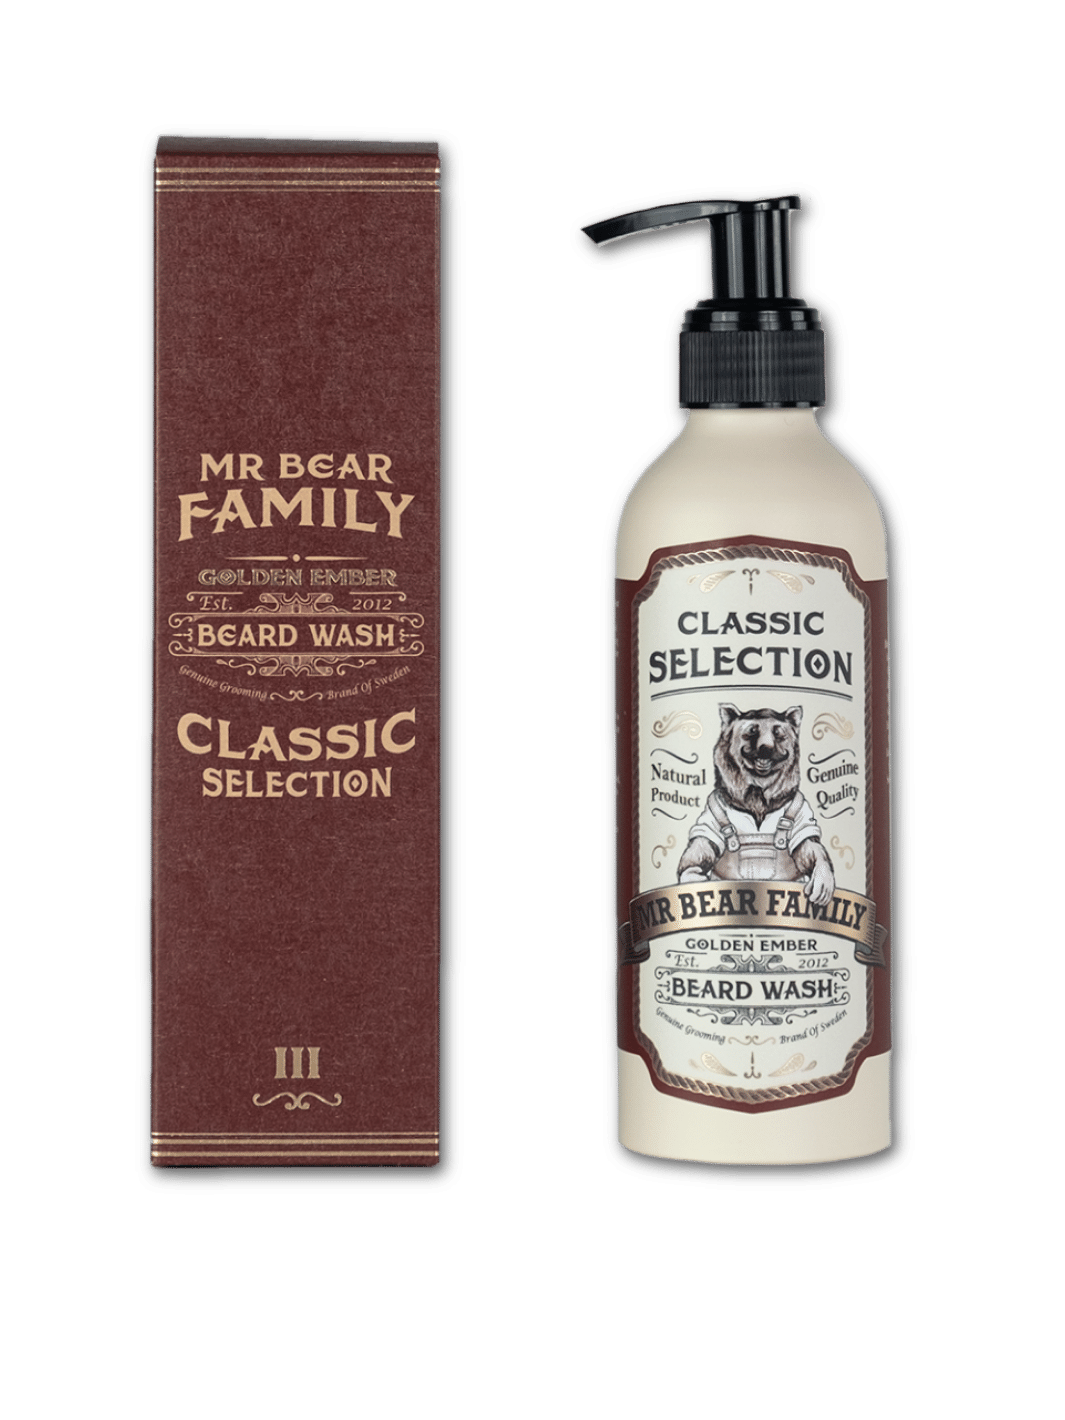 Mr. Bear Family Bartseife Golden Ember, 200ml Tiegel, natürliche Seife zur Reinigung und Pflege des Bartes, in einem stilvollen, dunkelbraunen Behälter mit goldenen Akzenten, verfügbar bei Phullcutz.